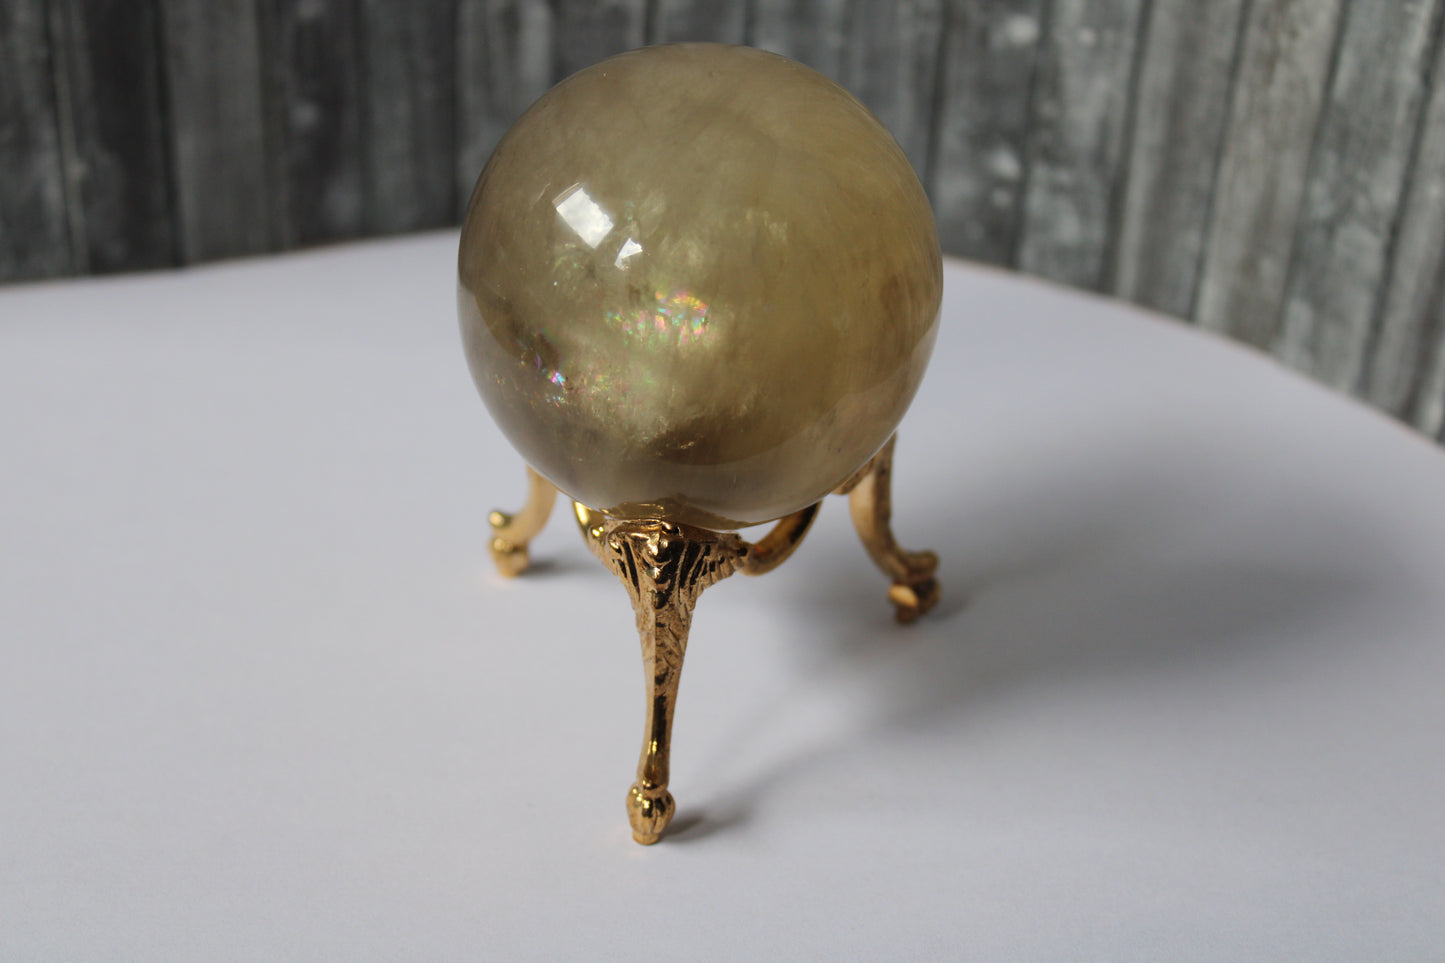 Sphère de citrine 6.5 cm - 295 grammes avec socle doré